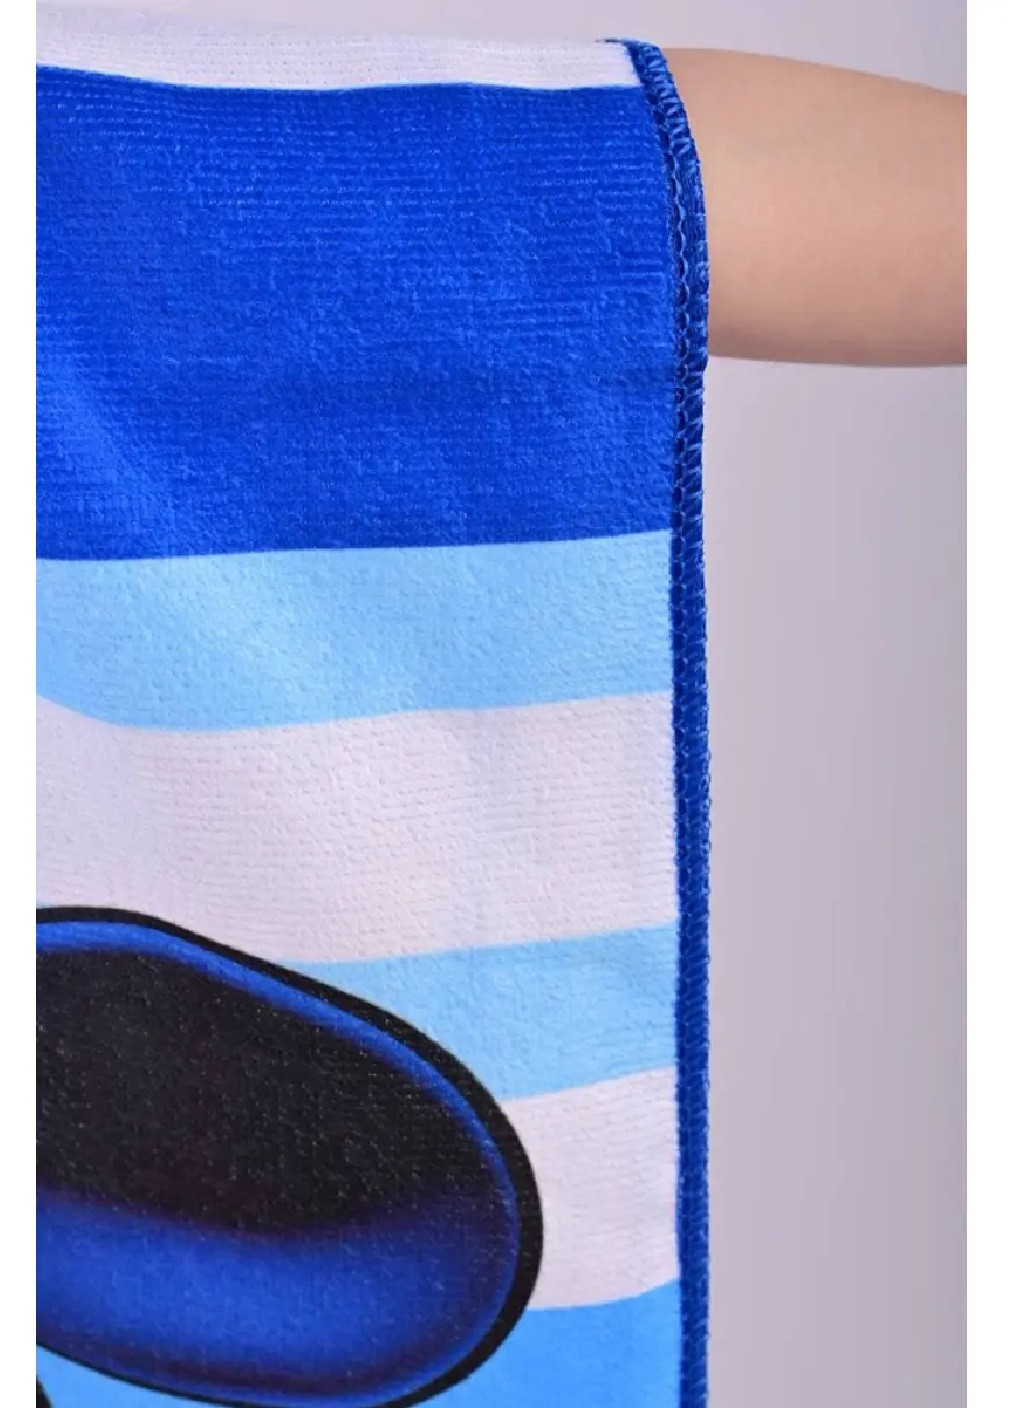 Unbranded детское пляжное полотенце пончо с капюшоном микрофибра для ванной бассейна пляжа 60х60 см (474690-prob) микки маус рисунок синий производство -